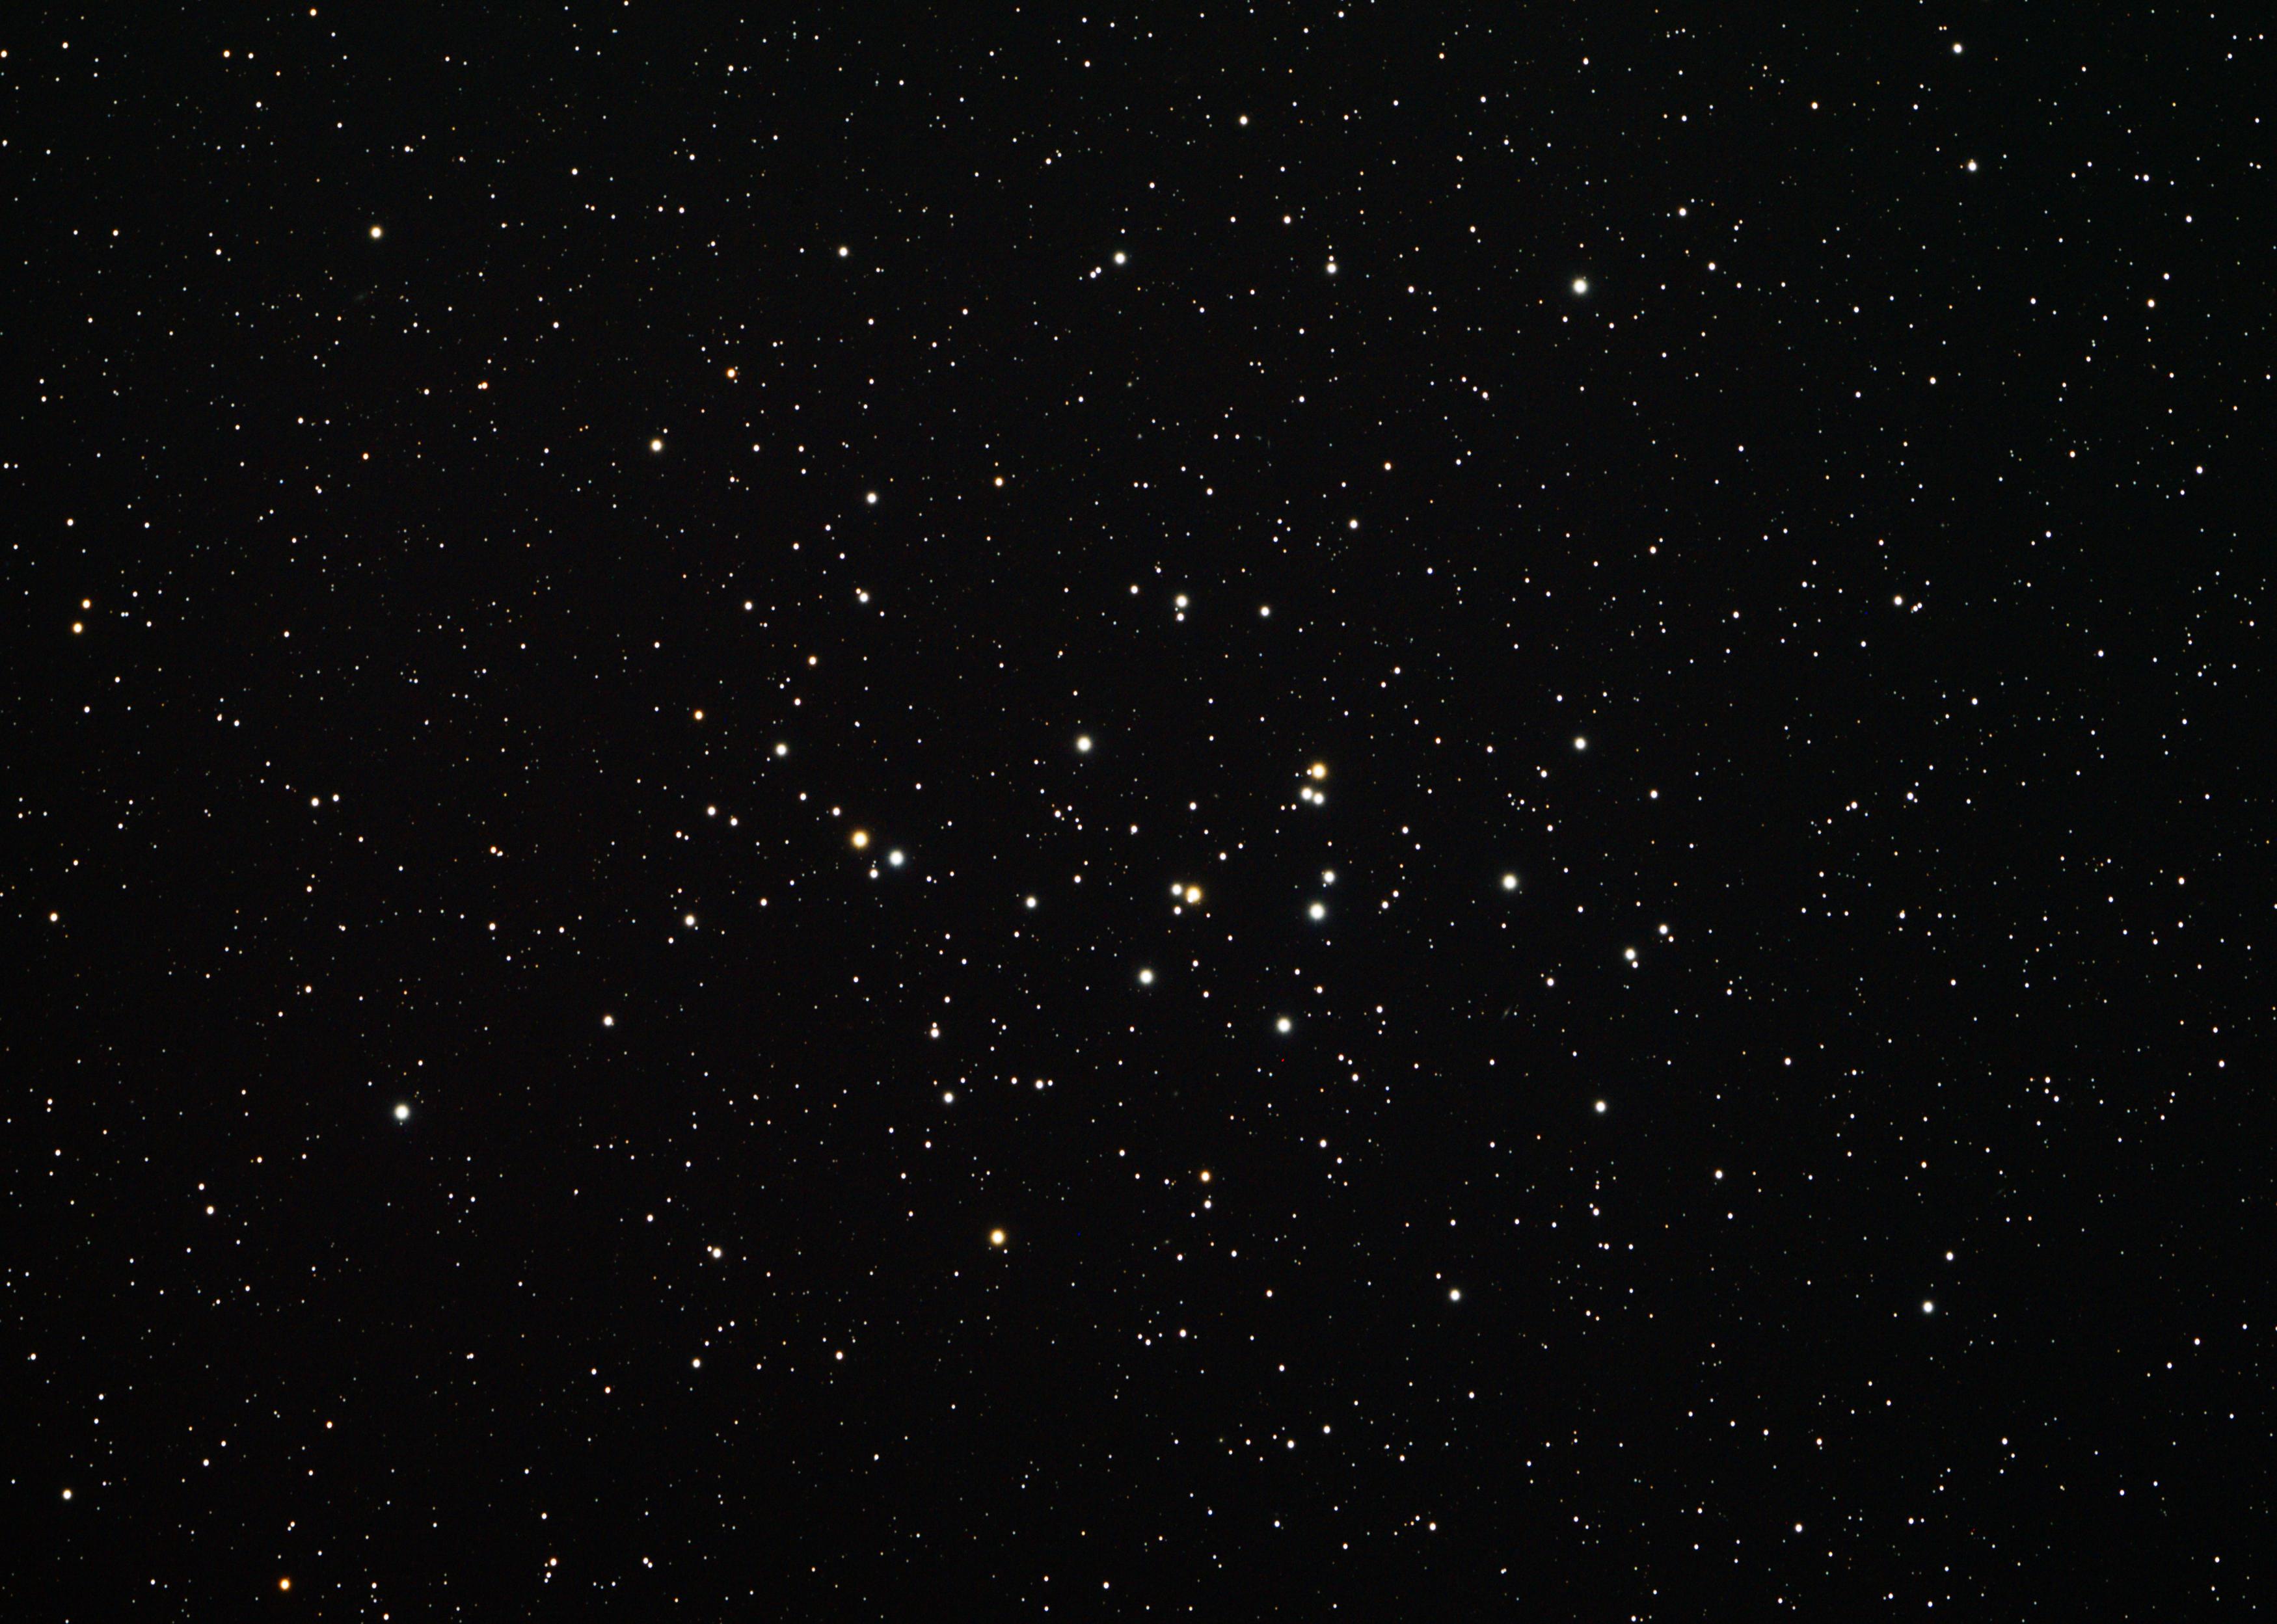 M 44 praesepe beehive cluster photo